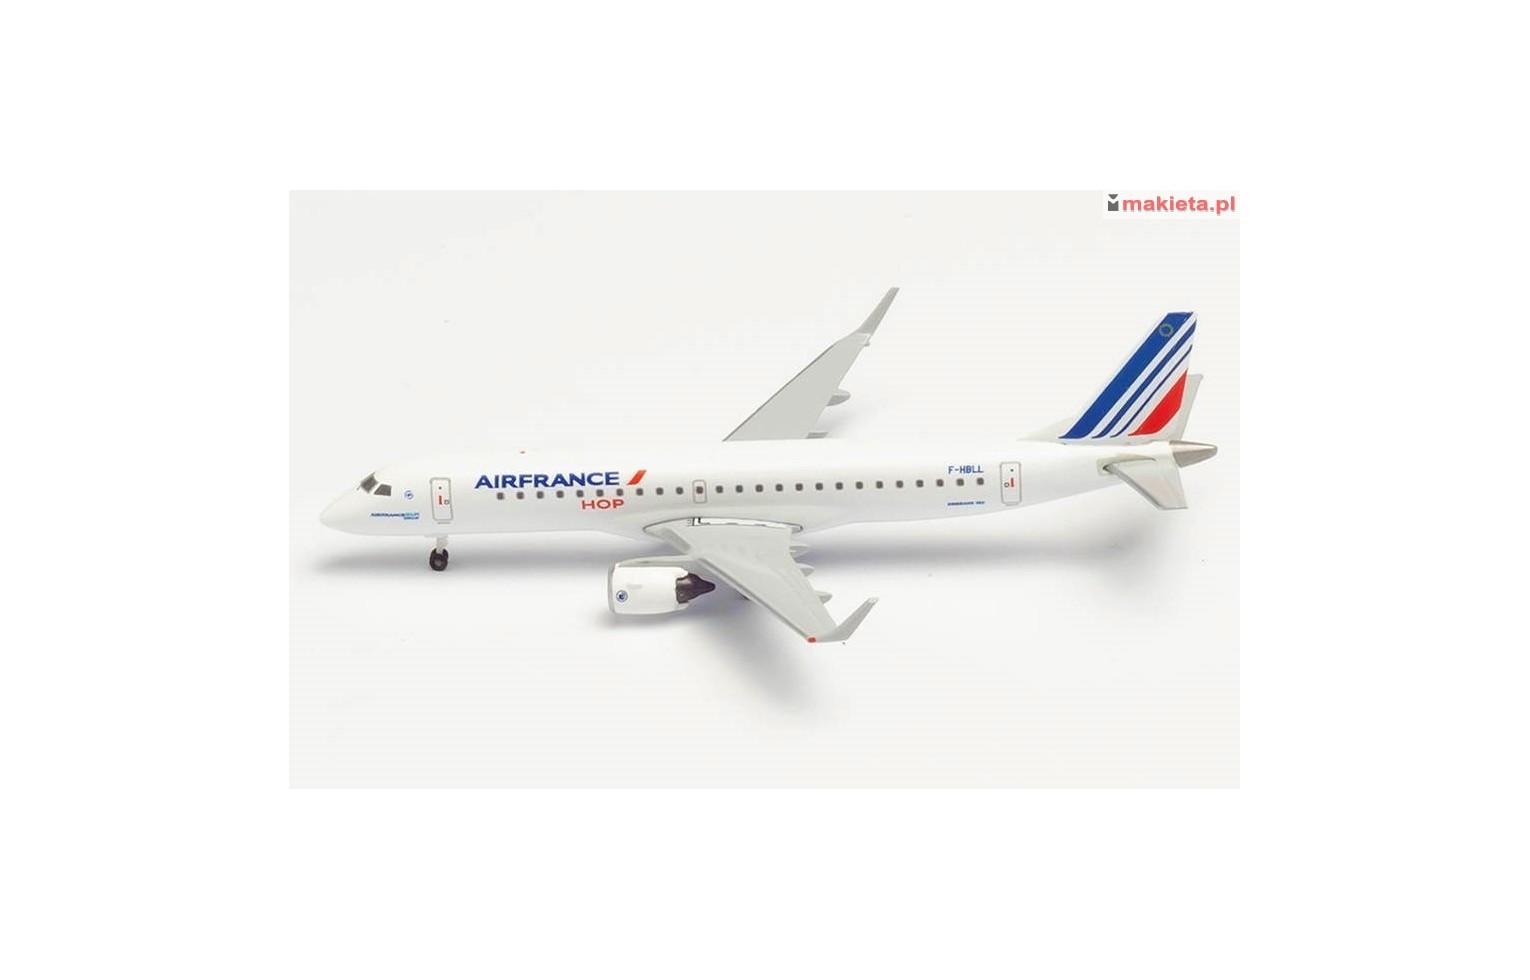 Herpa 534208, Air France HOP Embraer E190, skala 1:500, metal.